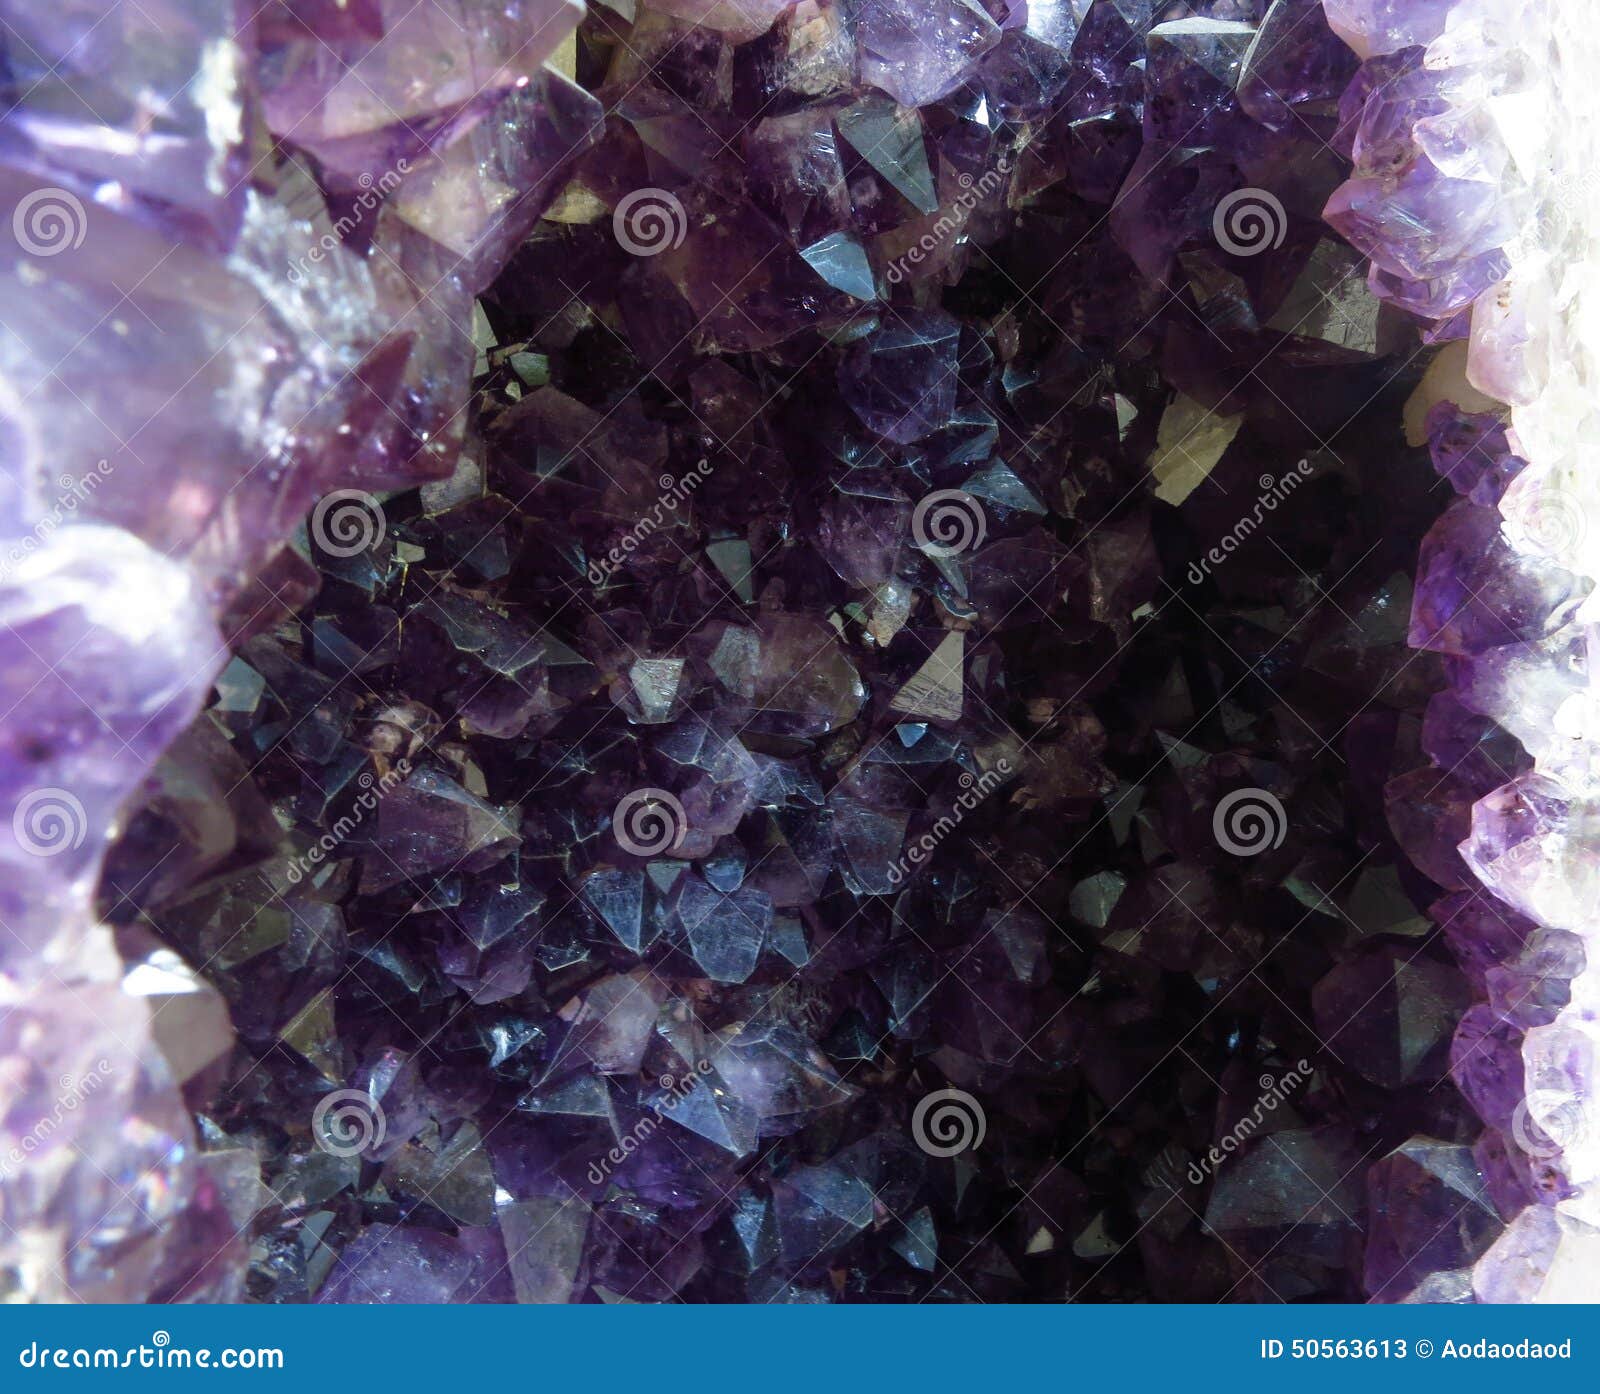 Фиолетовое соединение железа. Перпл Кристалл. Фиолетовый Кристалл. Аметист под микроскопом. Фиолетовый камень с металлическим блеском.